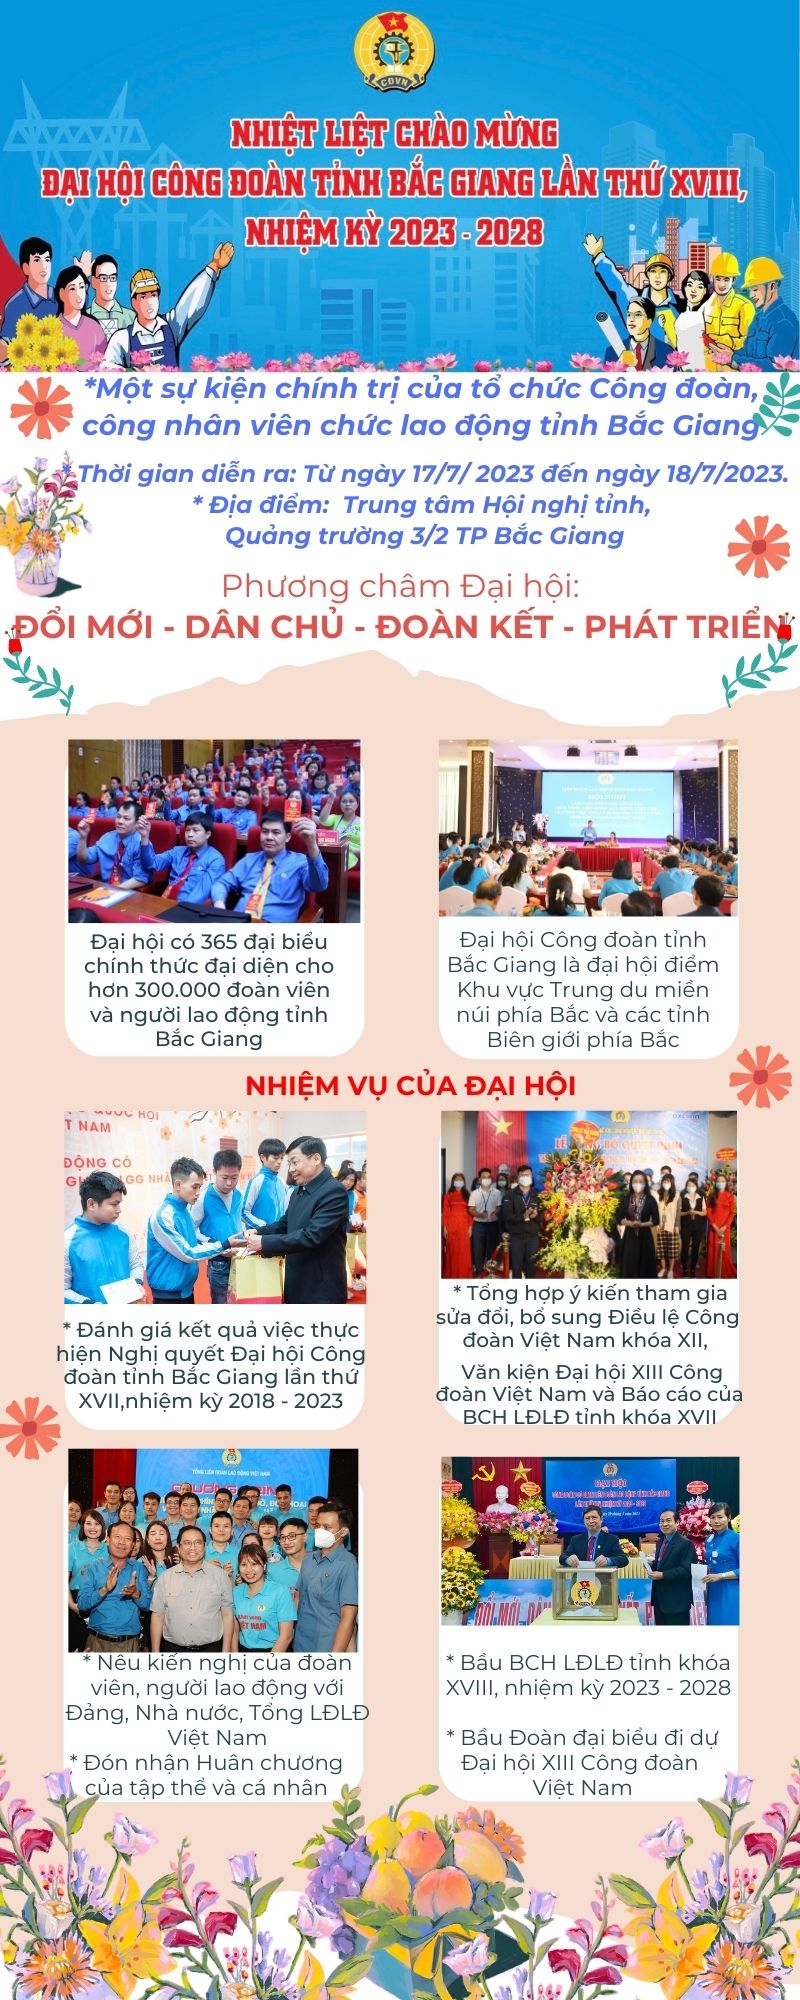 Thực hiện: Ban Tuyên giáo LĐLĐ tỉnh Bắc Giang 